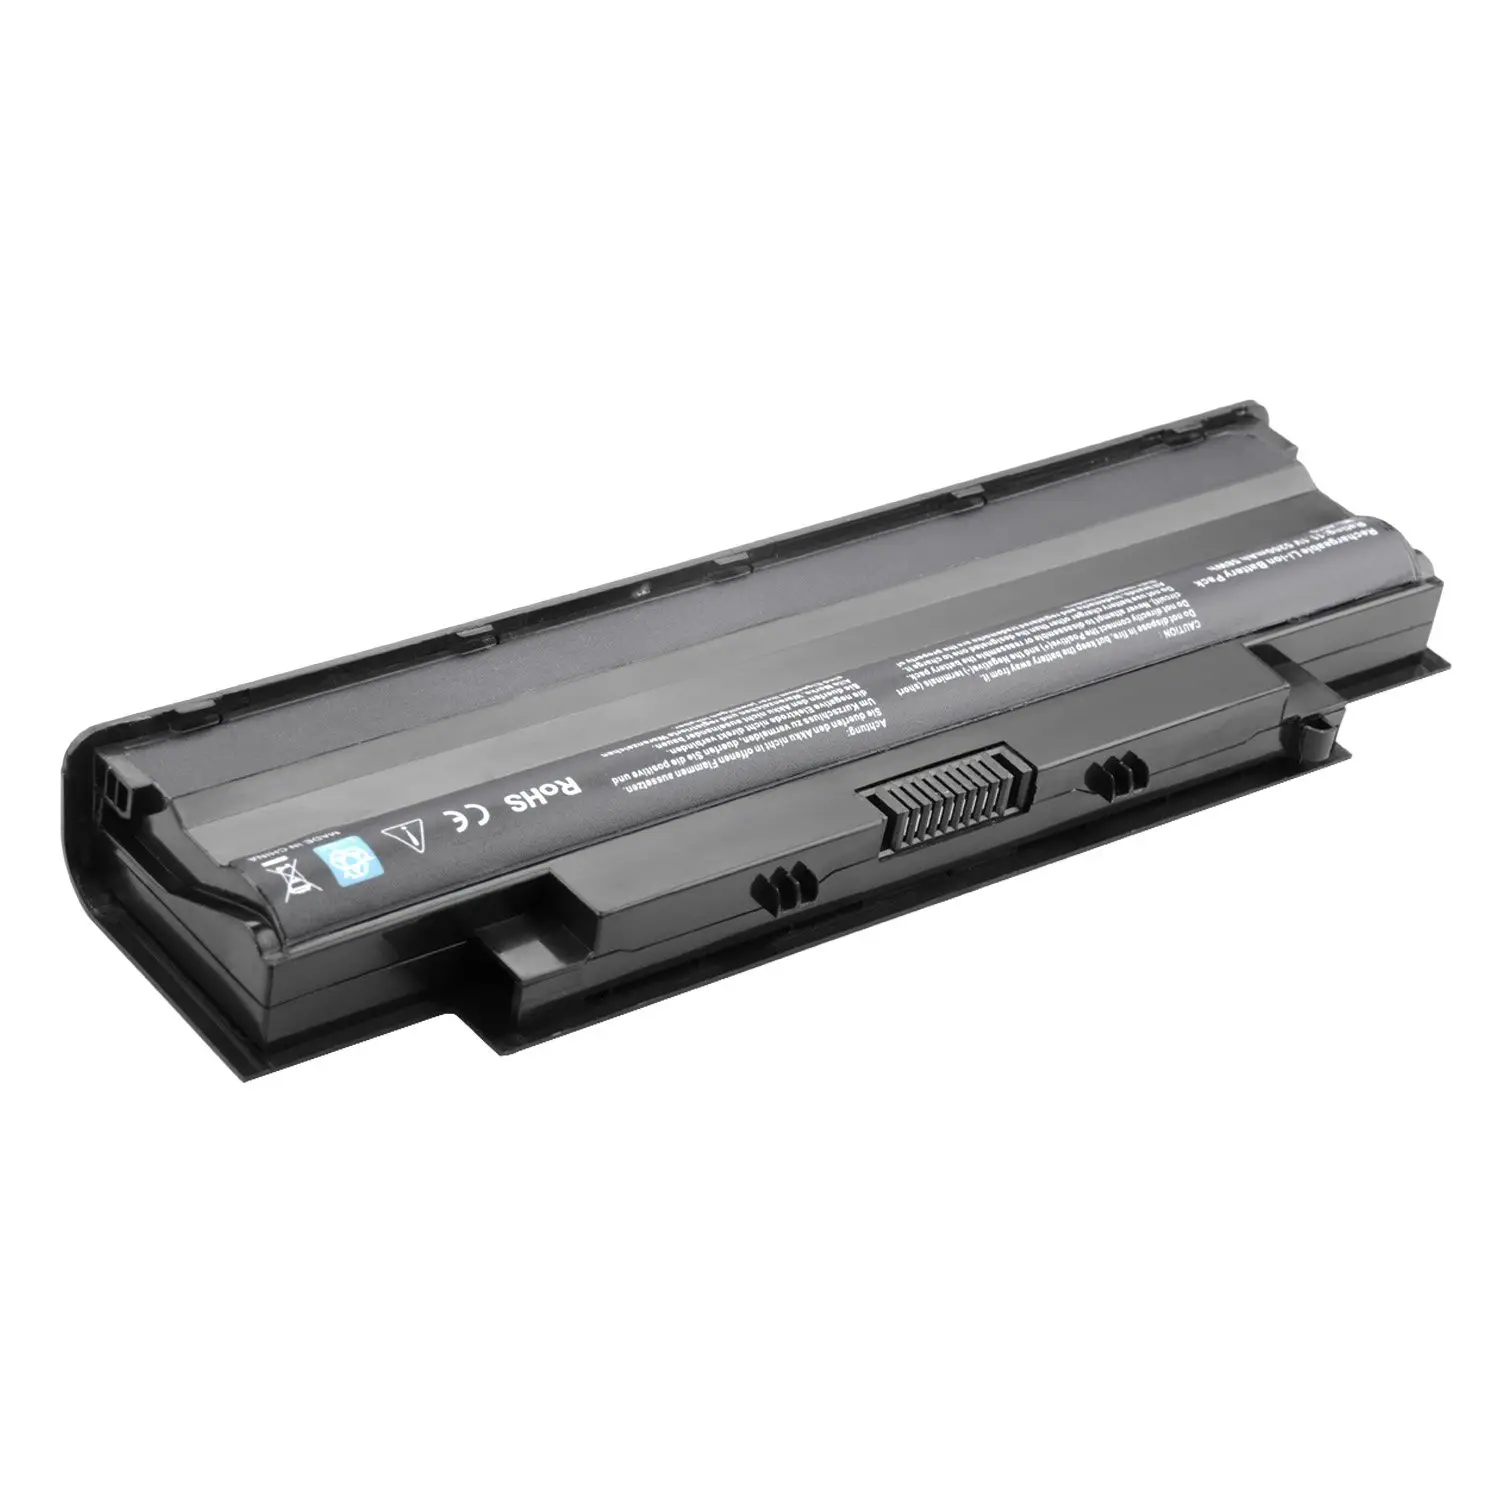 N5010 N5050 Battery Replacement Compatible for Dell N7010 N7110 N5030 N5040 N4010 N4110 M5030 M5010 M5110 3520 laptop battery